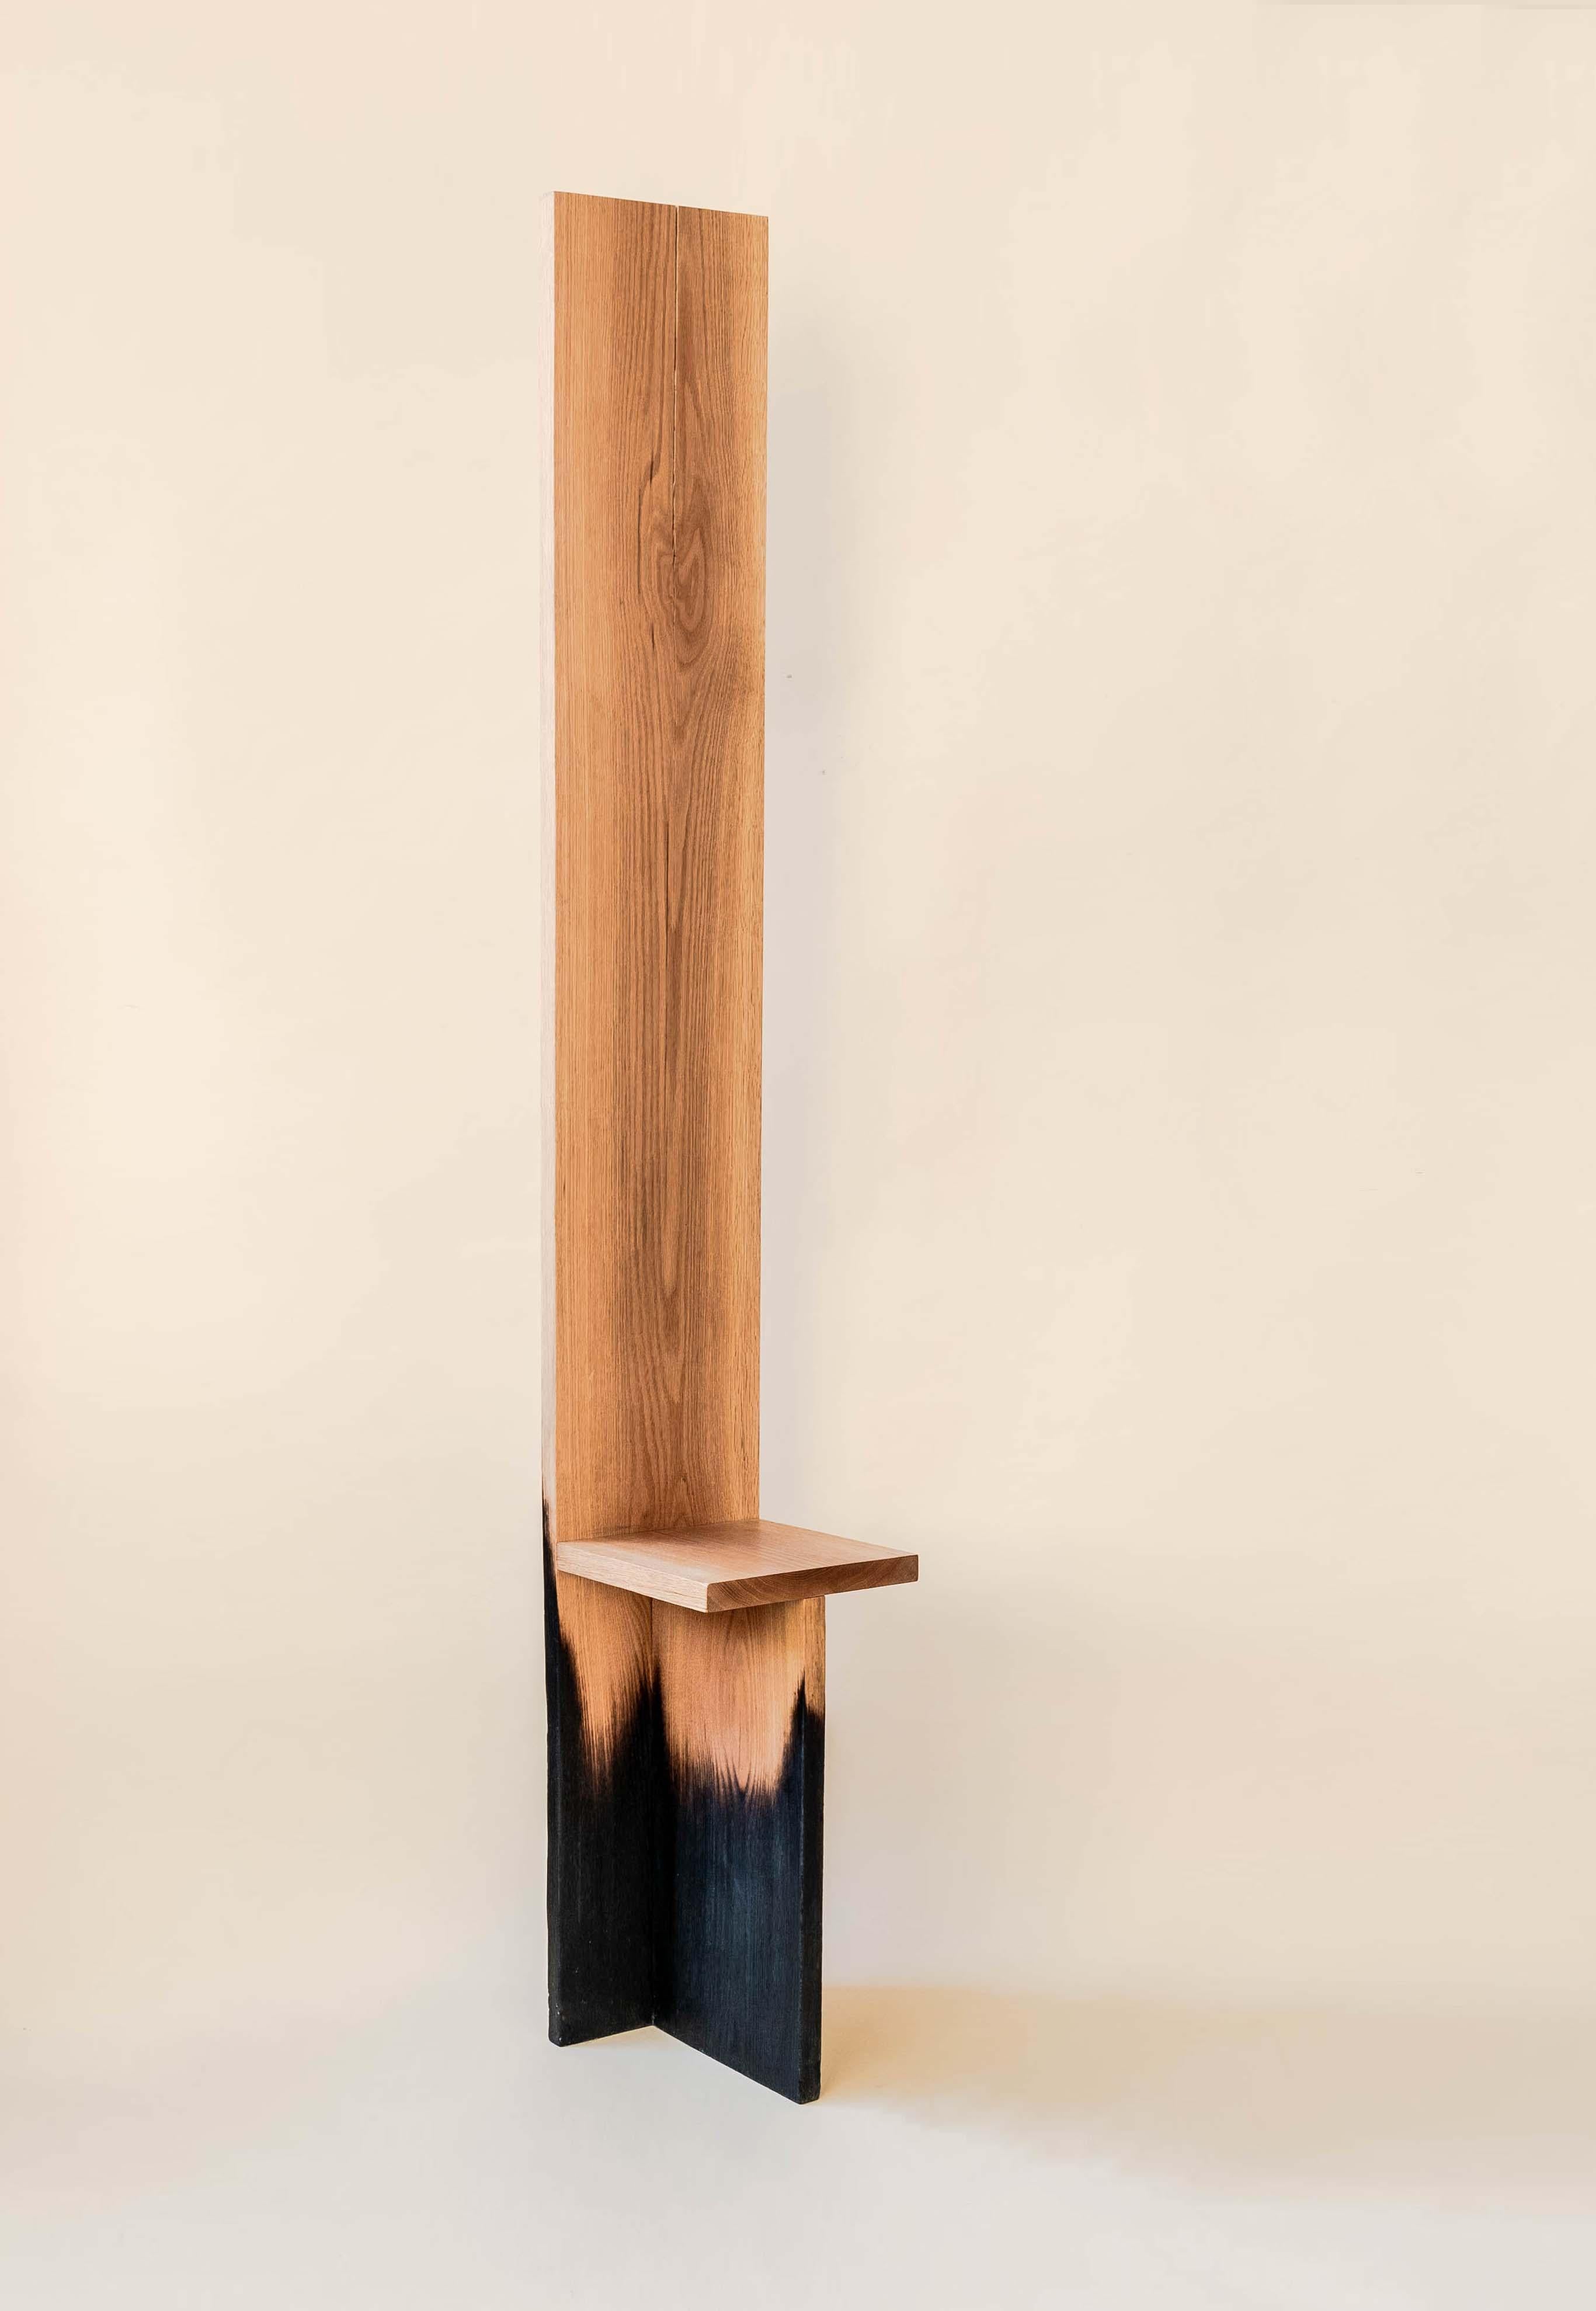 Langer Stuhl aus gebrannter Eiche von Daniel Elkayam
Einzigartig
Abmessungen: D 30 x B 30 x H 160 cm
MATERIALIEN: Eichenholz

Die Charred Collection'S
Eine Kollektion handgefertigter Holzobjekte, inspiriert von einem der mächtigsten Naturphänomene